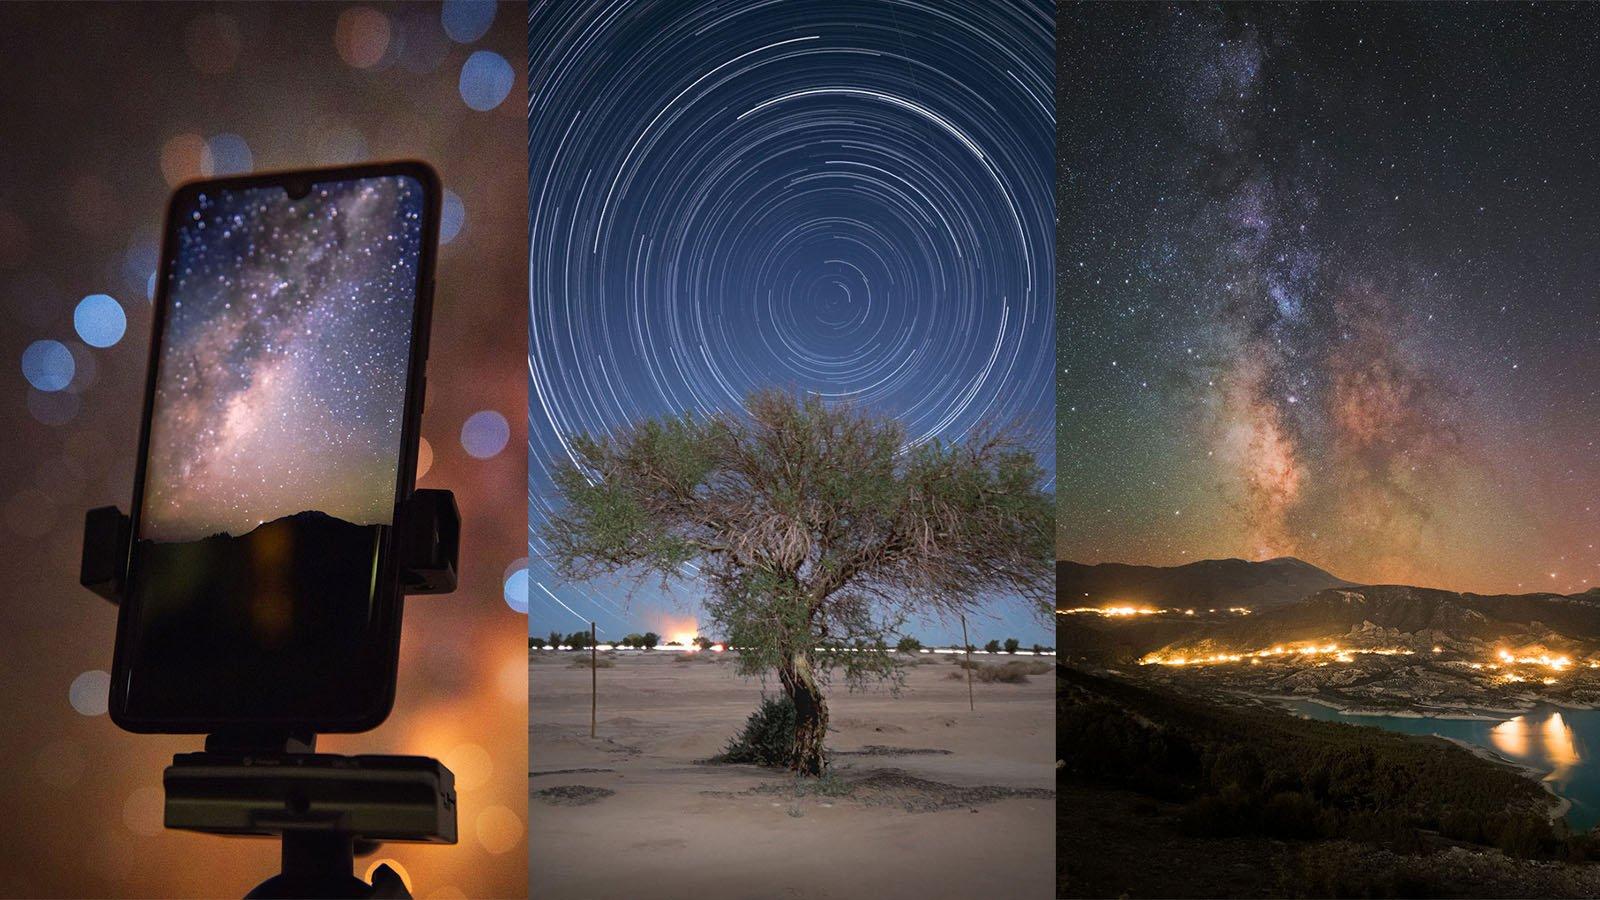 Hãy khám phá thế giới đầy bí ẩn của thiên văn trời đêm bằng điện thoại chụp ảnh thiên văn tuyệt vời. Hình ảnh thu được sẽ khiến bạn không thể tin nổi vào vẻ đẹp của vũ trụ đang quanh ta. Chắc chắn bạn sẽ không muốn bỏ lỡ cơ hội này.